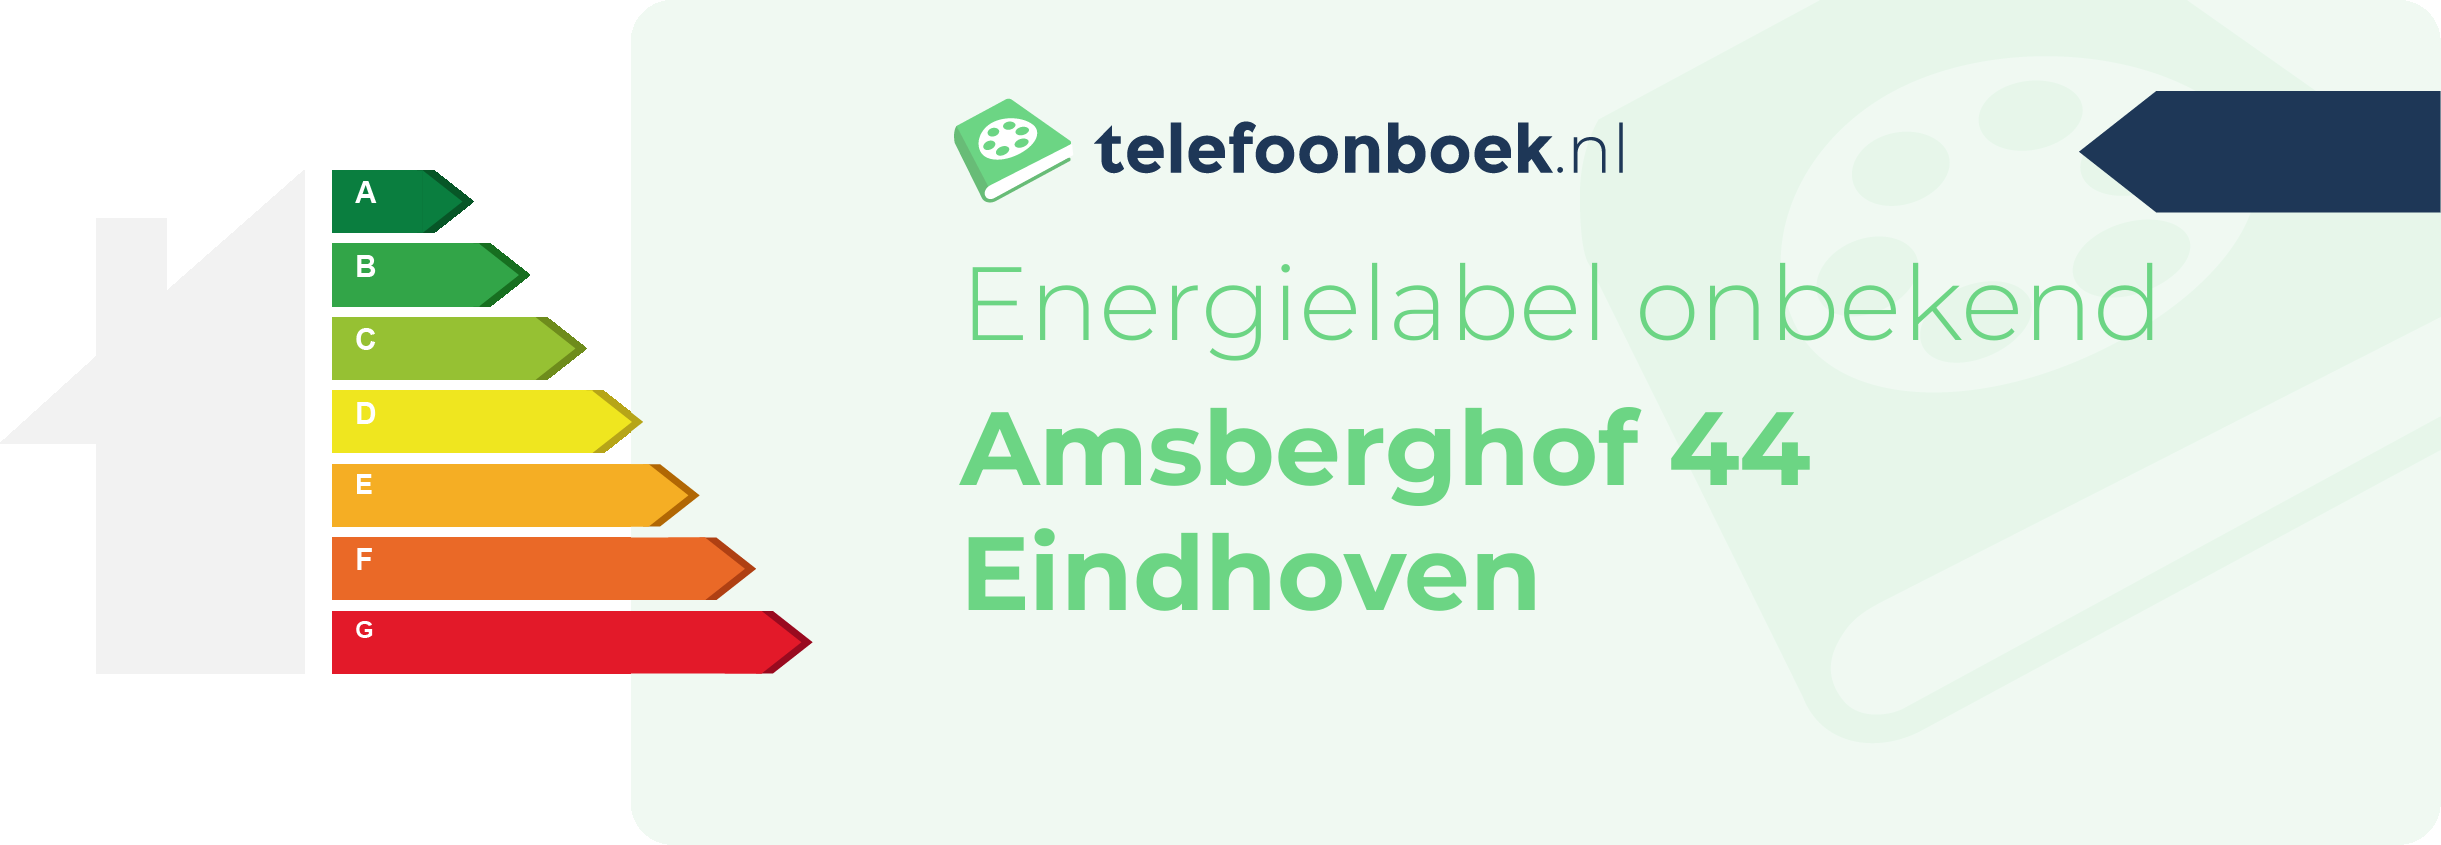 Energielabel Amsberghof 44 Eindhoven